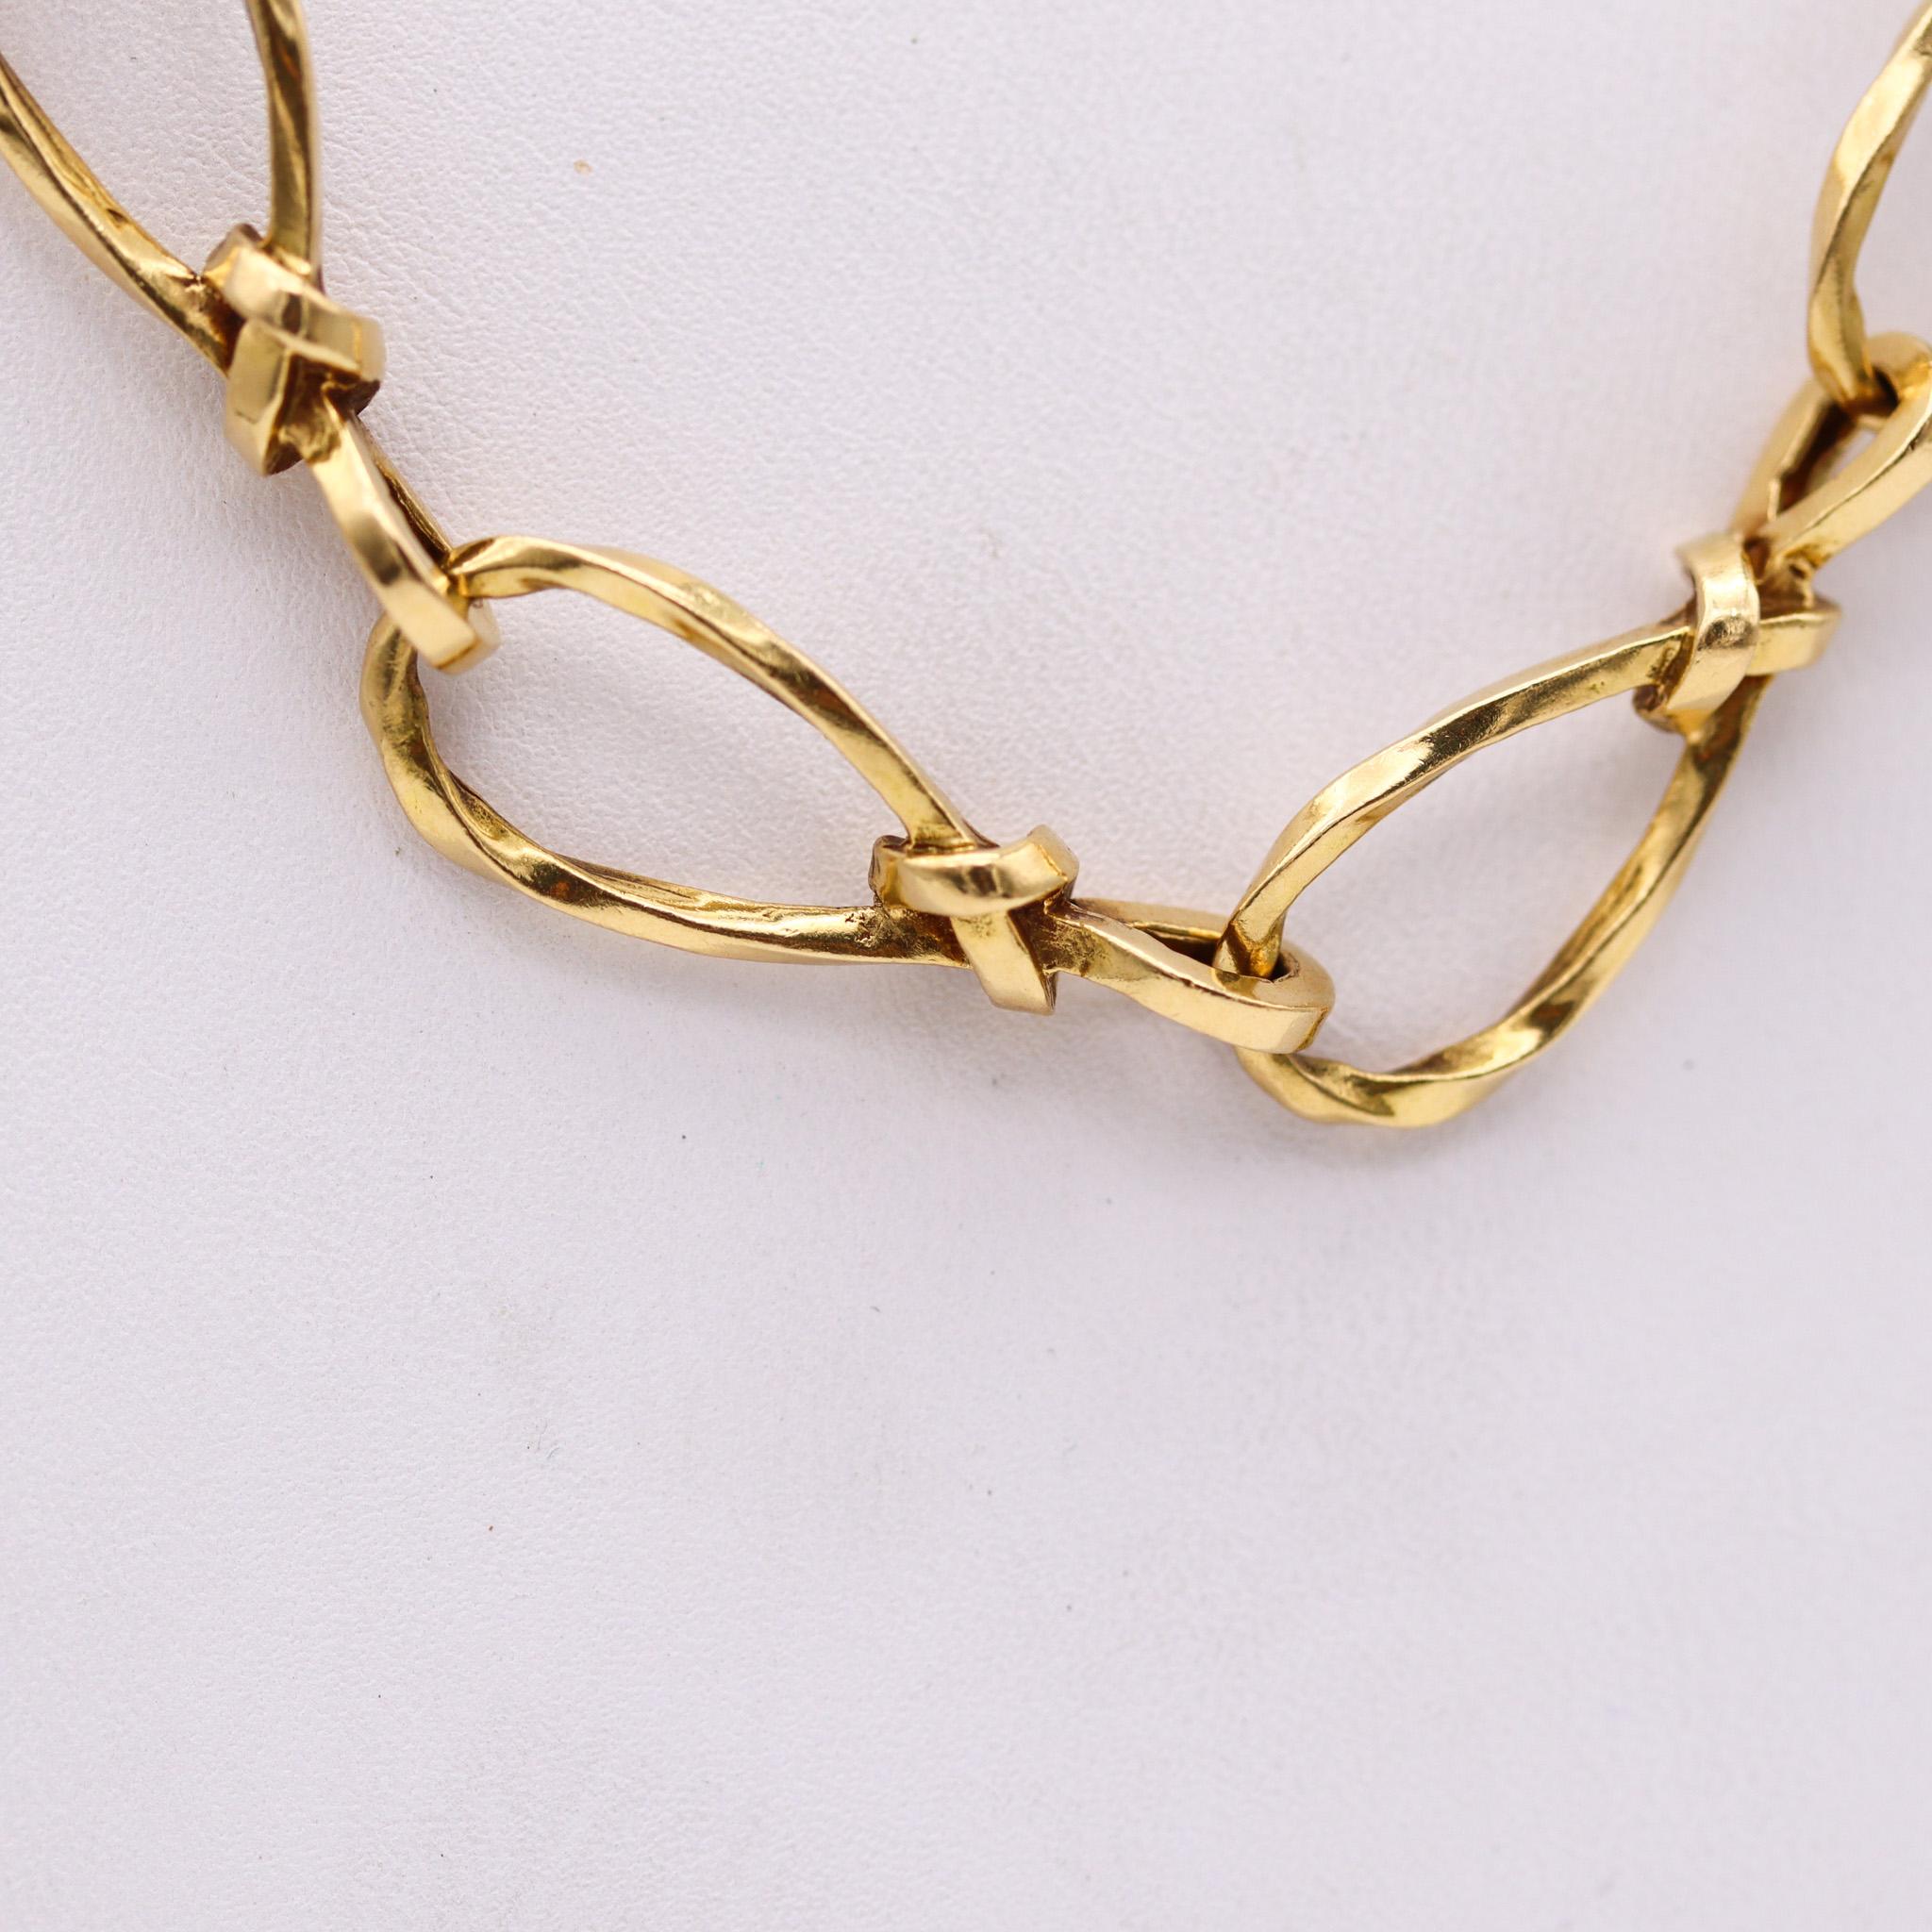 Modernist gedrehte Links Halskette sautoir in Frankreich gemacht.

Eine sehr ungewöhnliche lange Halskette sautoir, in Paris Frankreich zurück in den 1970er Jahren erstellt. Diese Kette wurde mit modernistischen Mustern gefertigt und besteht aus